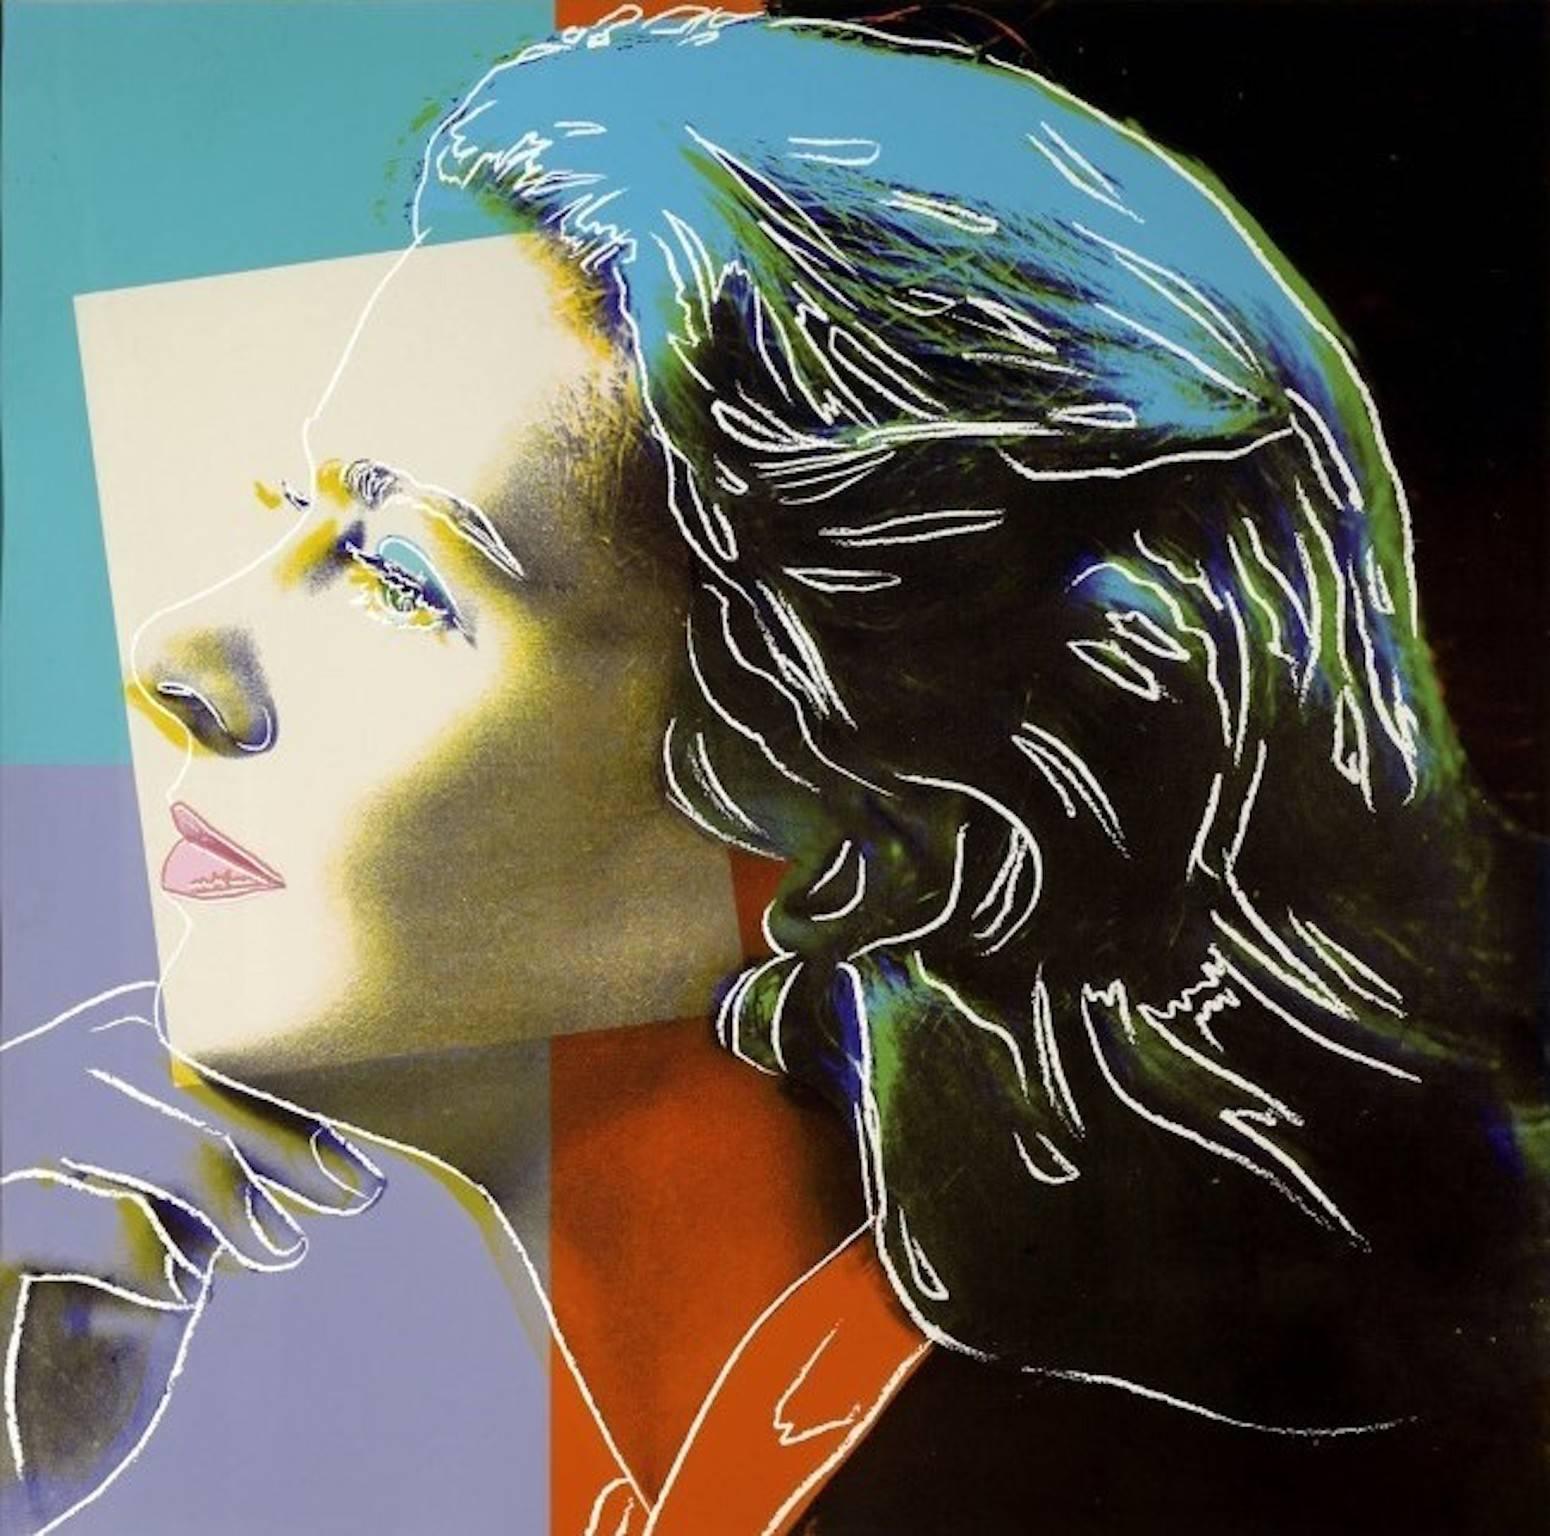 Andy Warhol Portrait Print - Ingrid Bergman, Herself